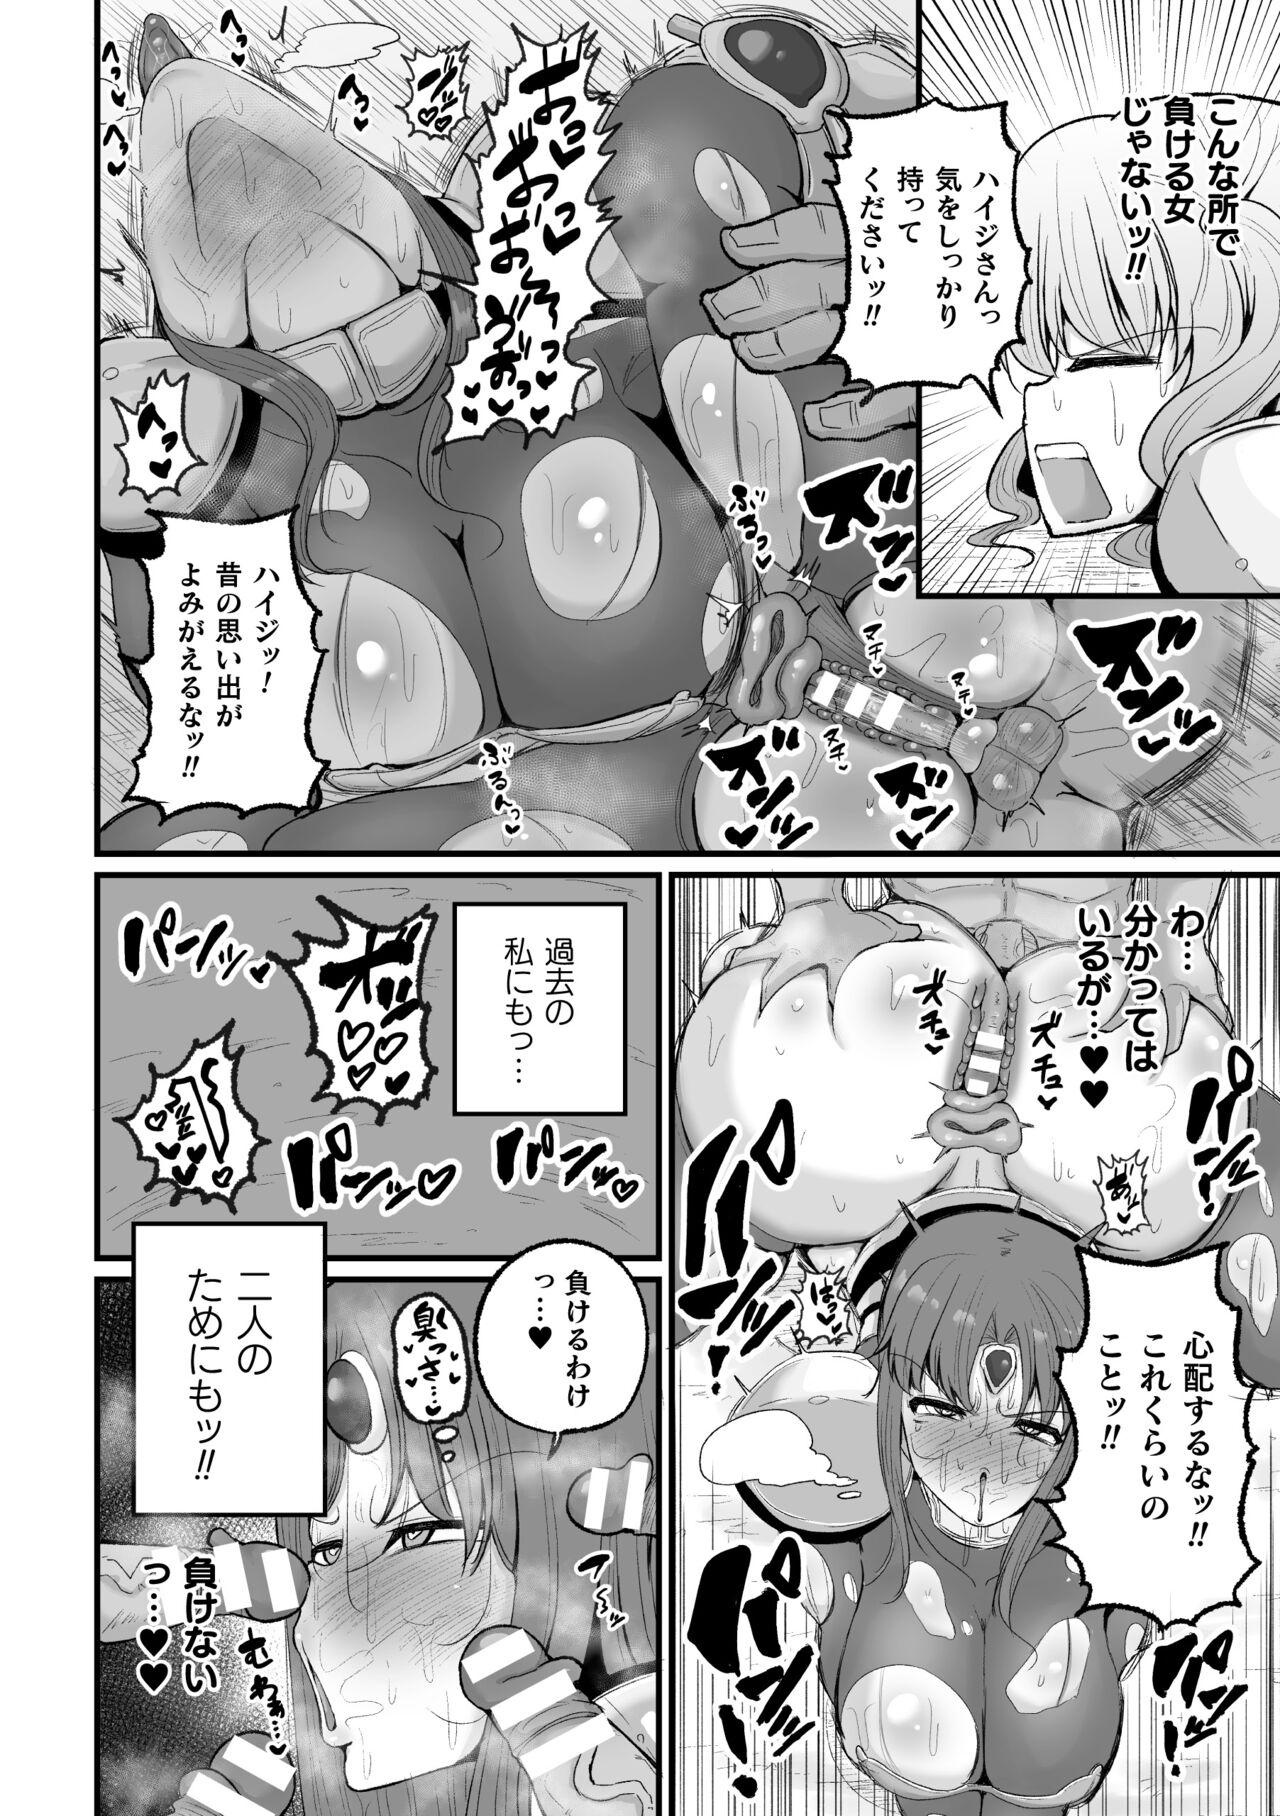 2D Comic Magazine Choukyouzumi Tatakau Heroine Vol. 1 33